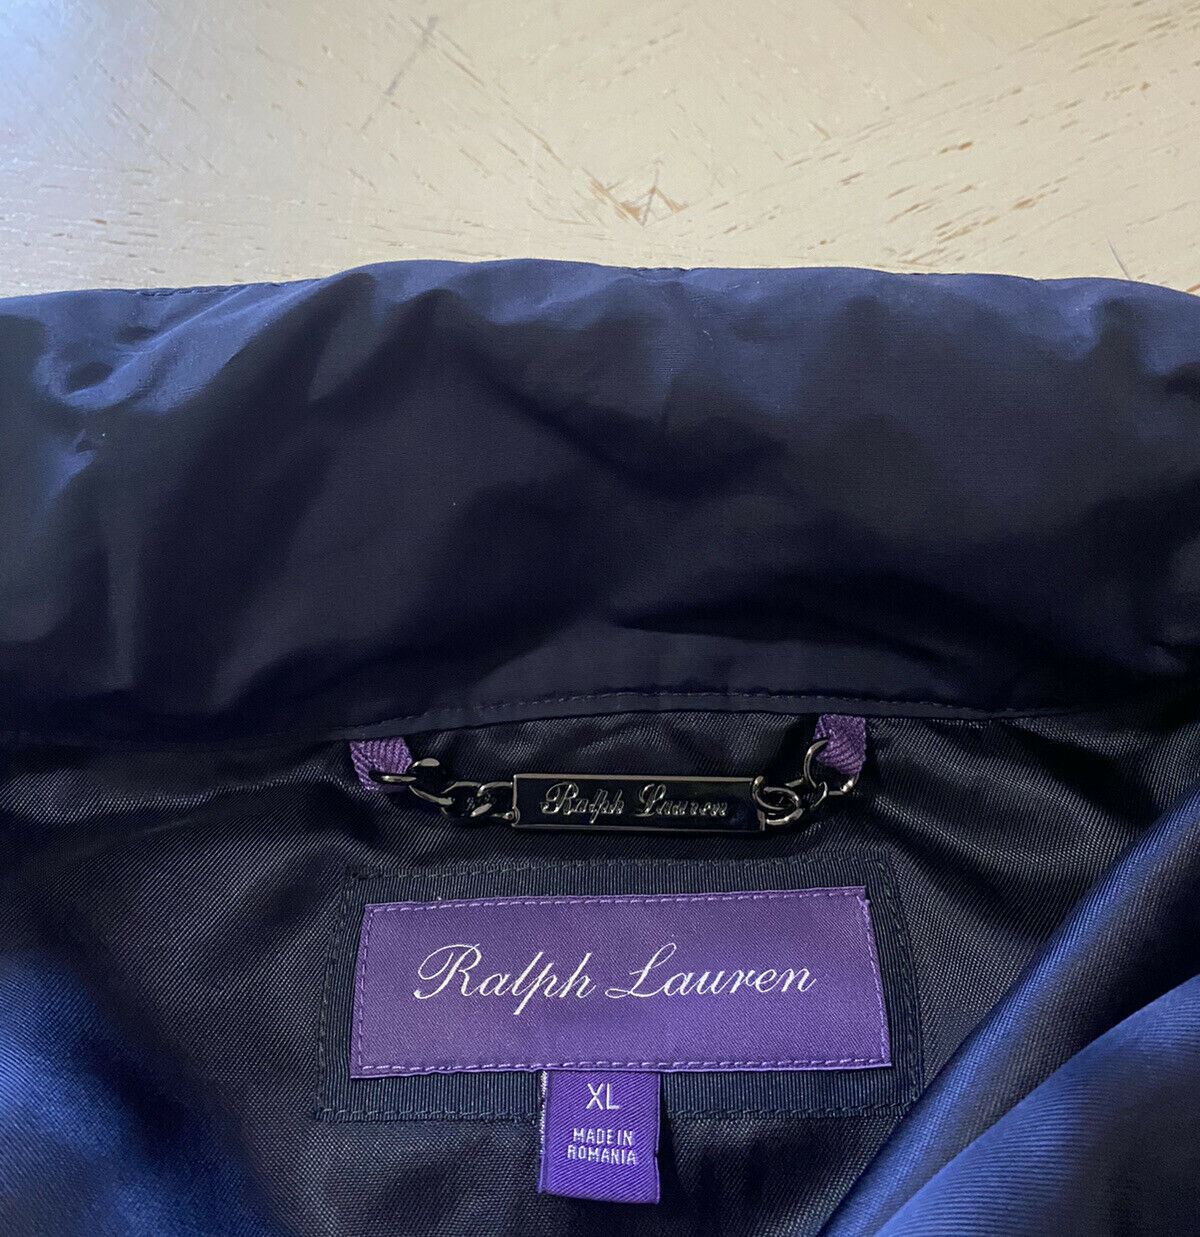 Новинка: полевая куртка с капюшоном Ralph Lauren Purple Label, темно-синее пальто XL, 1895 долларов США.